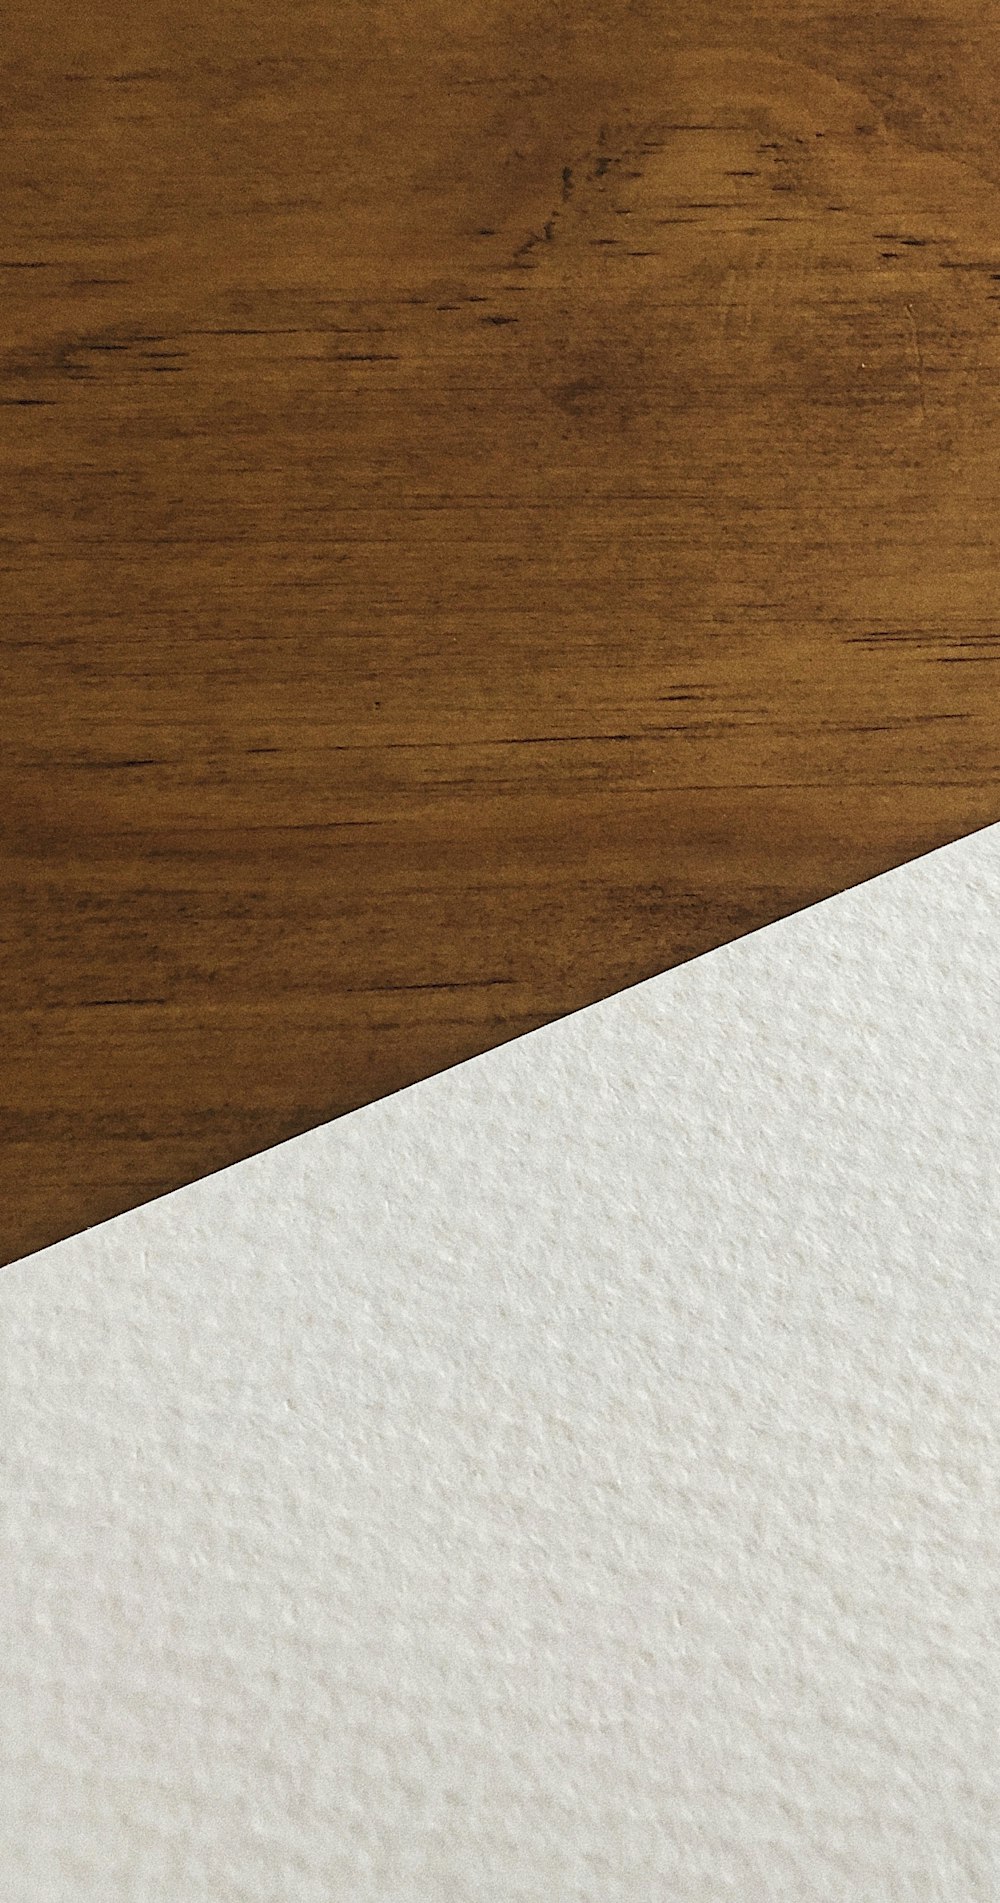 papier blanc sur une surface en bois marron